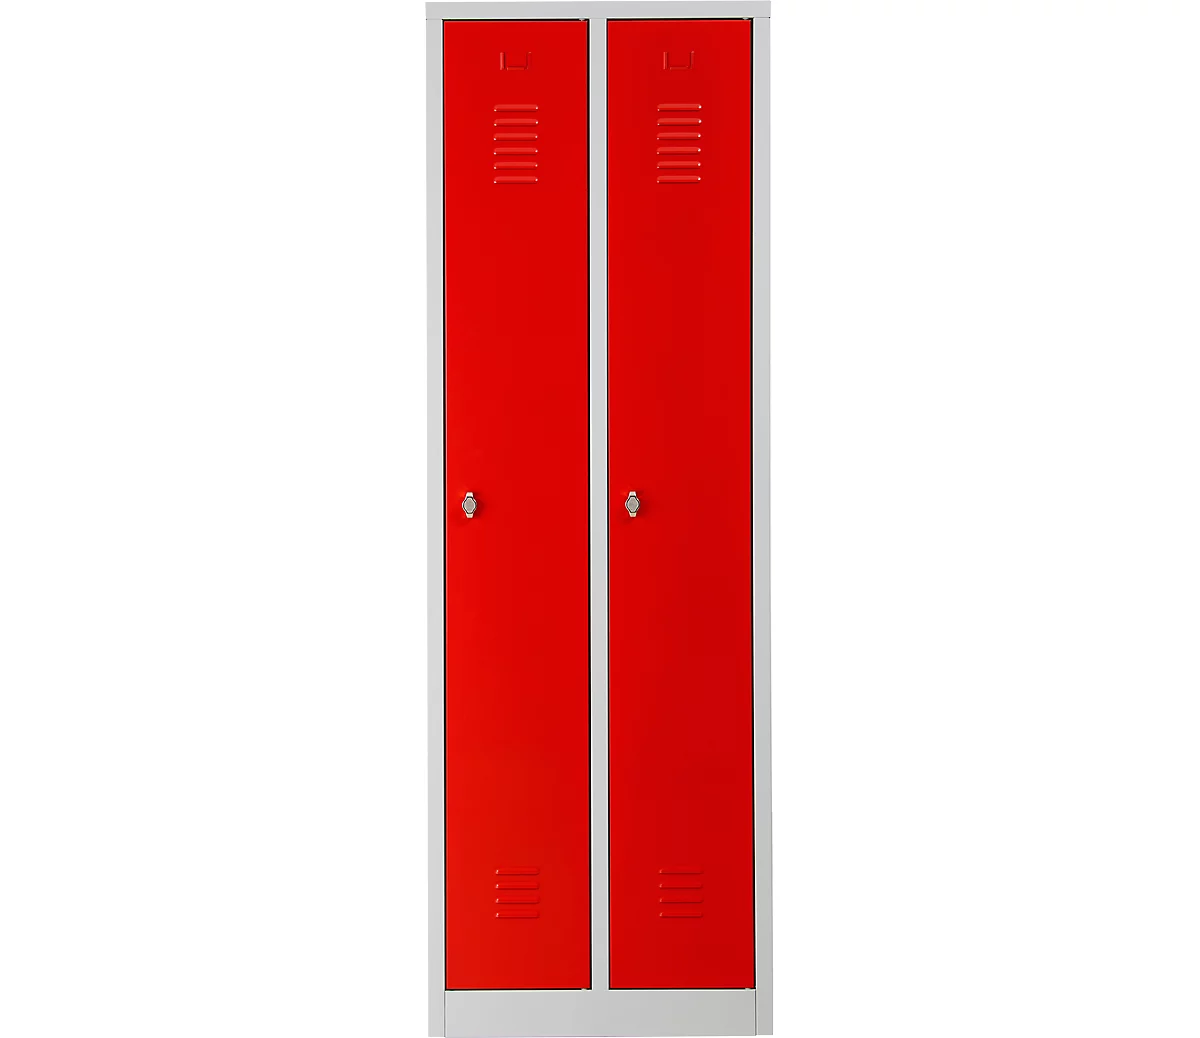 Taquilla, 2 puertas, An 600 x Al 1800 mm, cierre de pasador giratorio, gris luminoso/rojo intenso